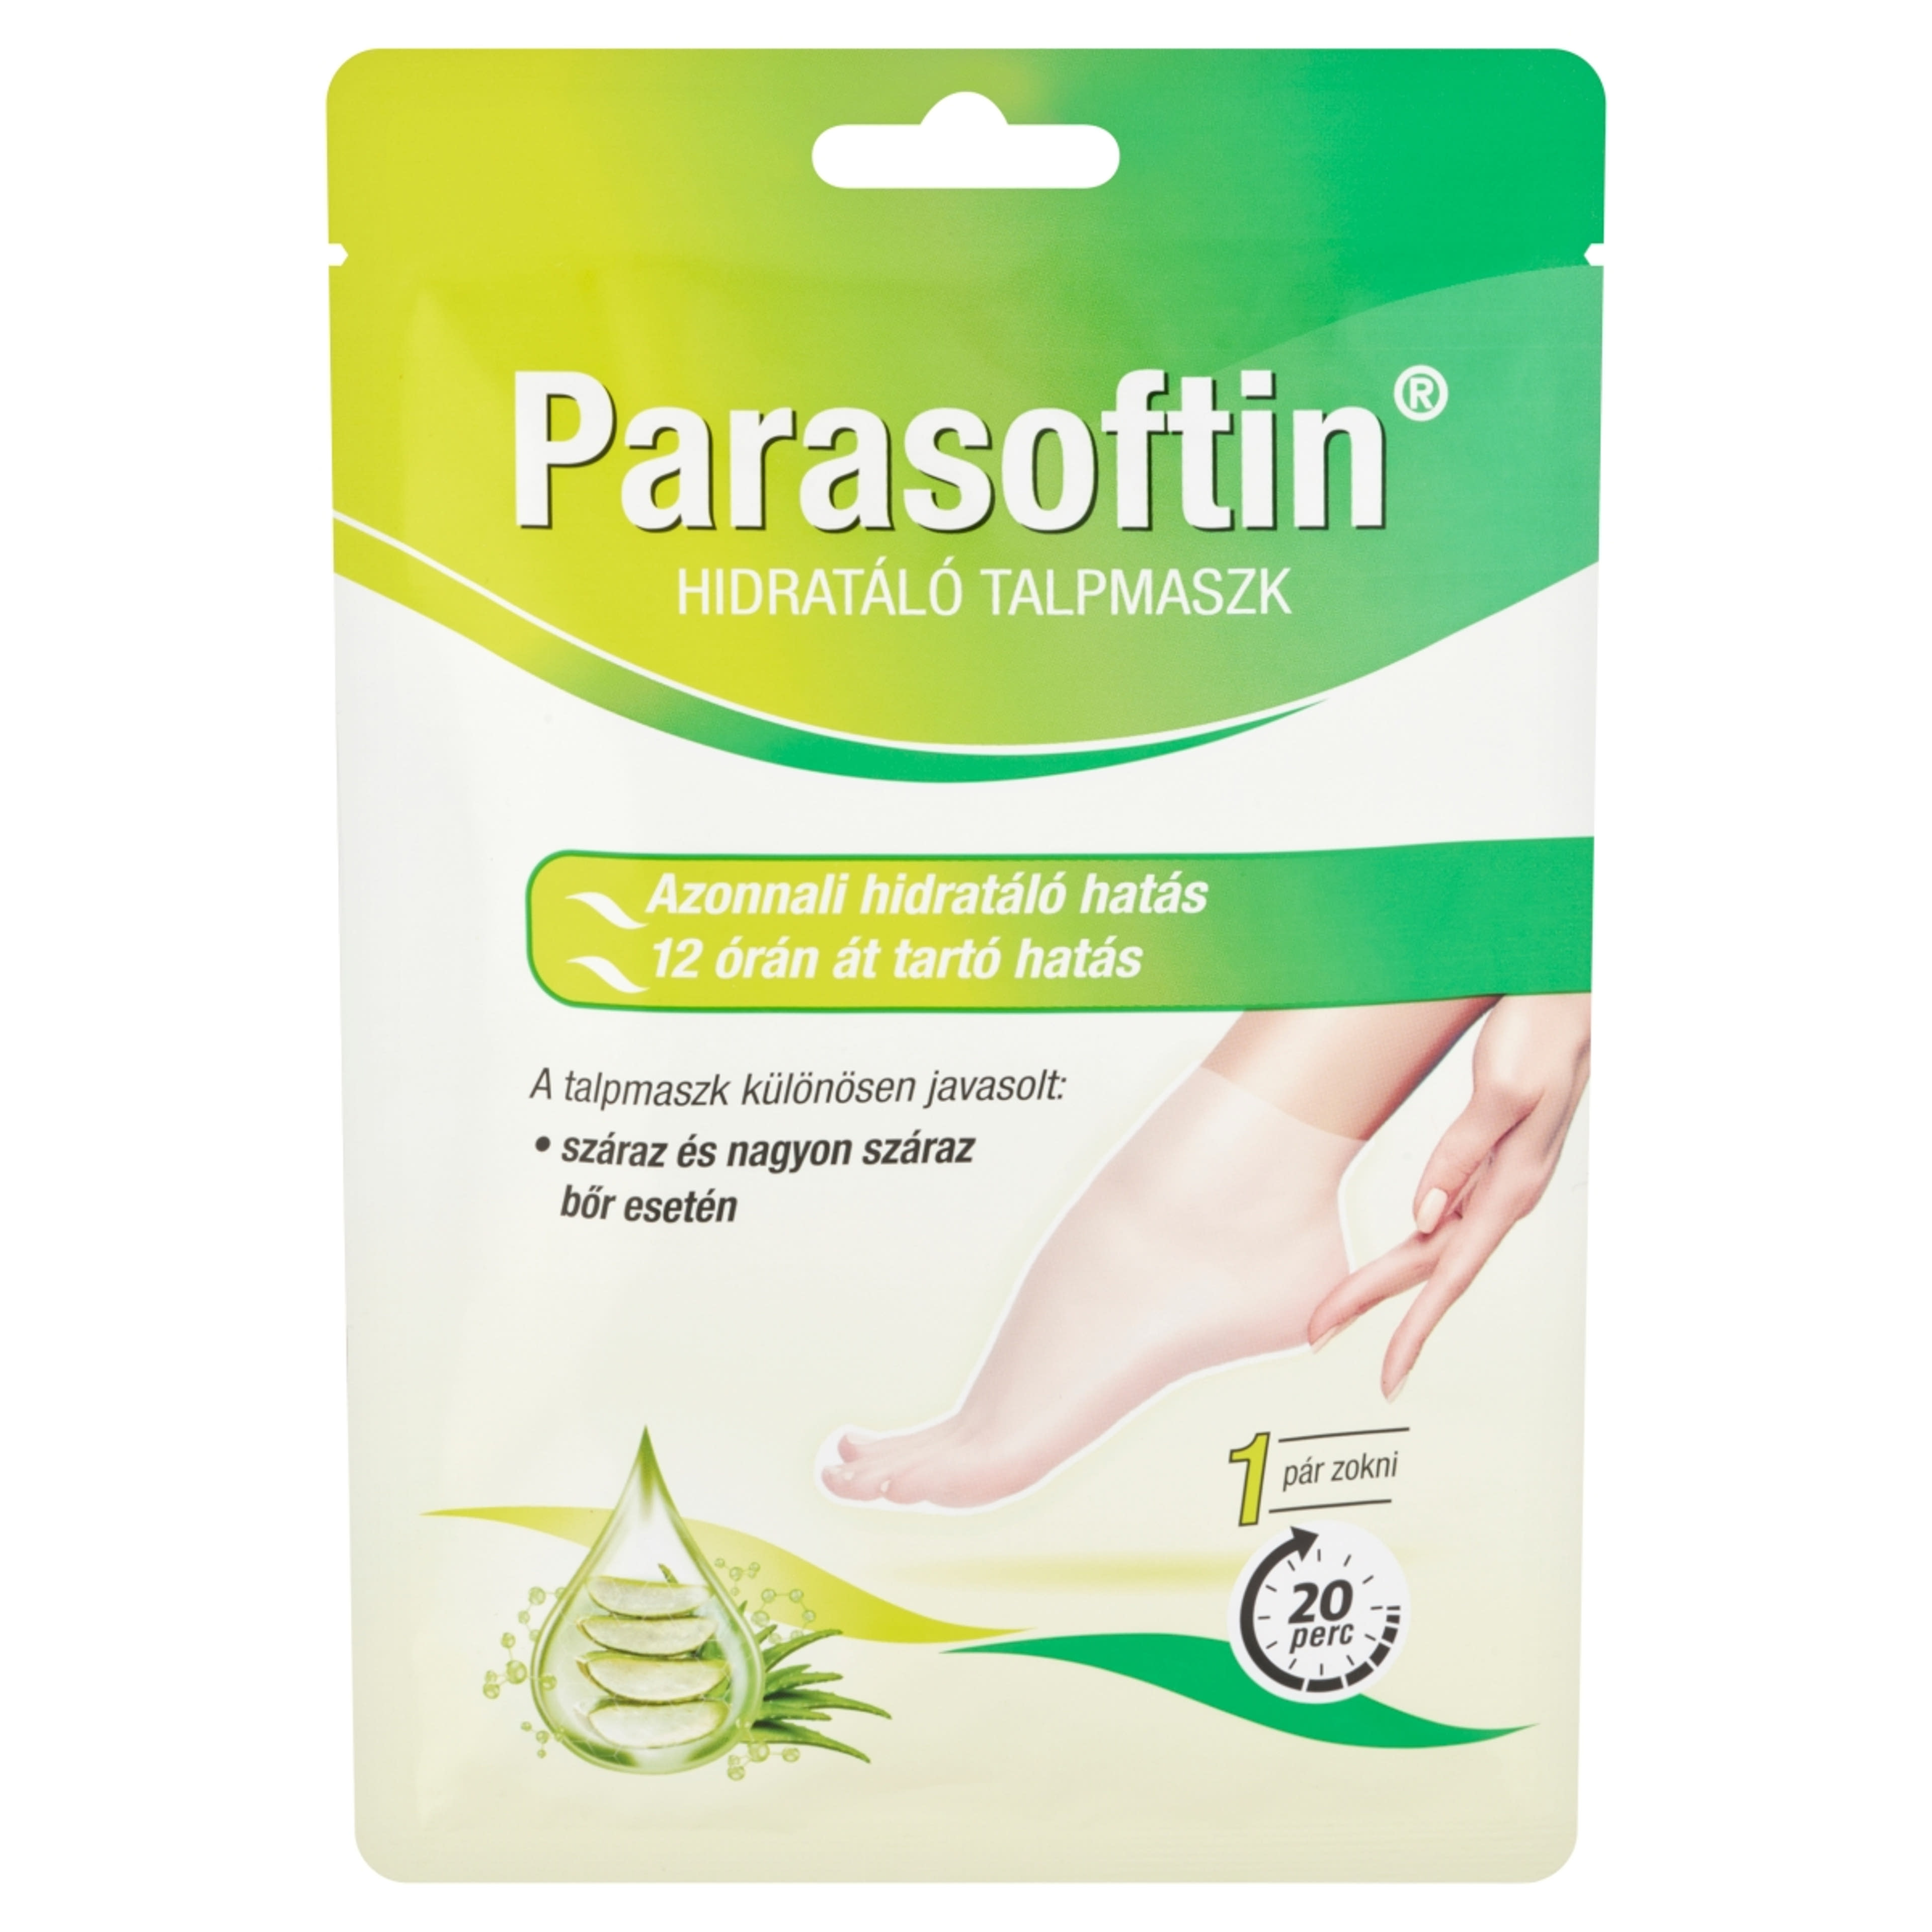 Parasofin hidratáló taplmaszk 1 pár - 1 db-2